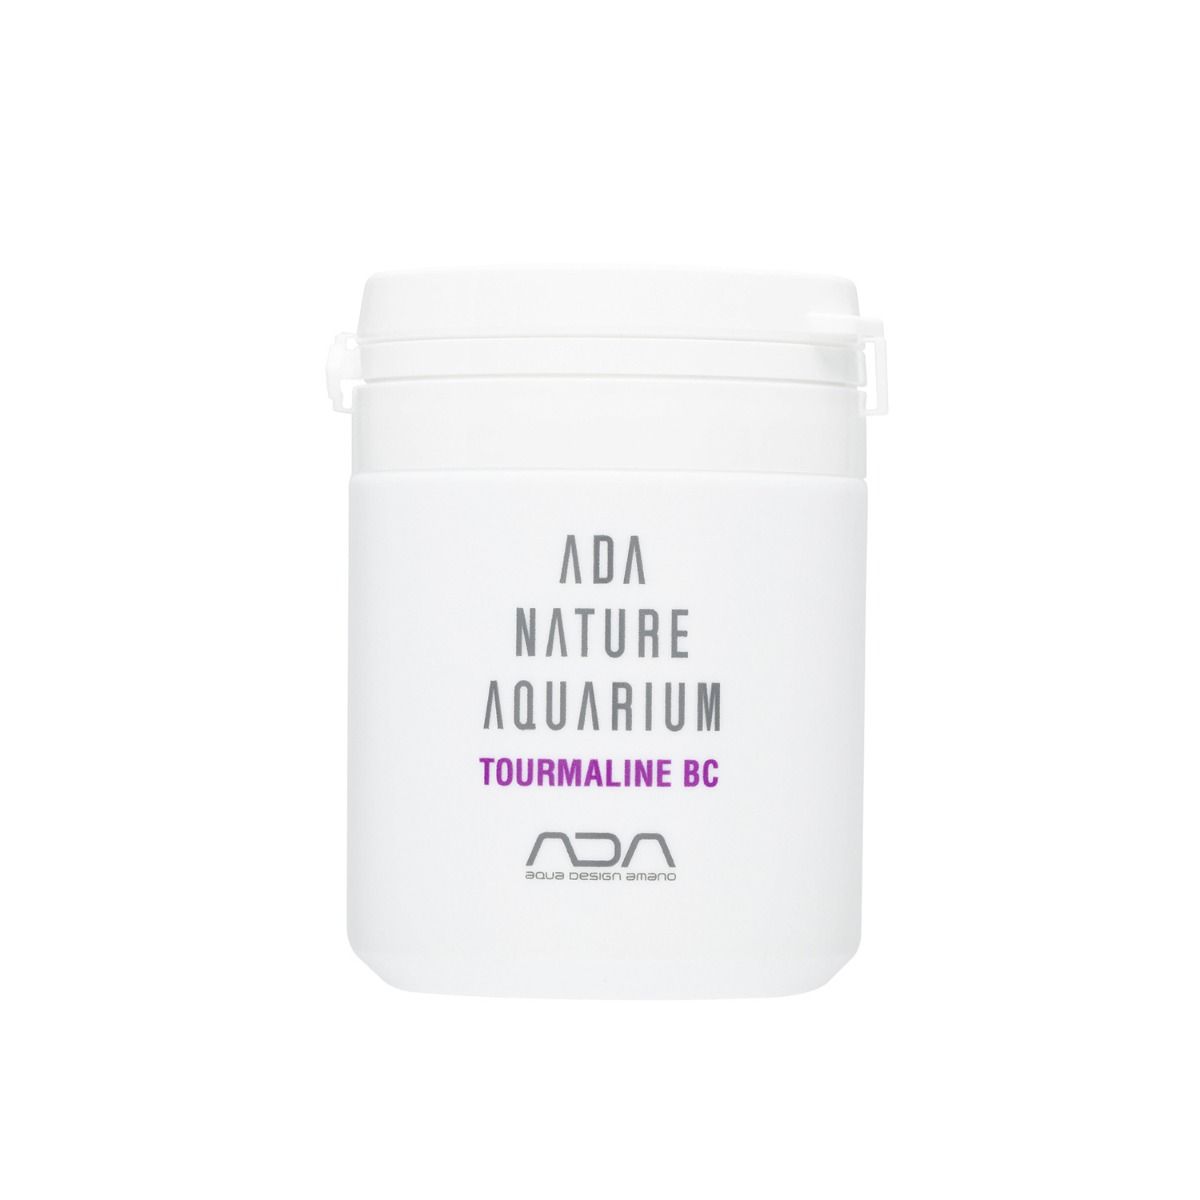 ADA Tourmaline BC - 100g - Aquatia